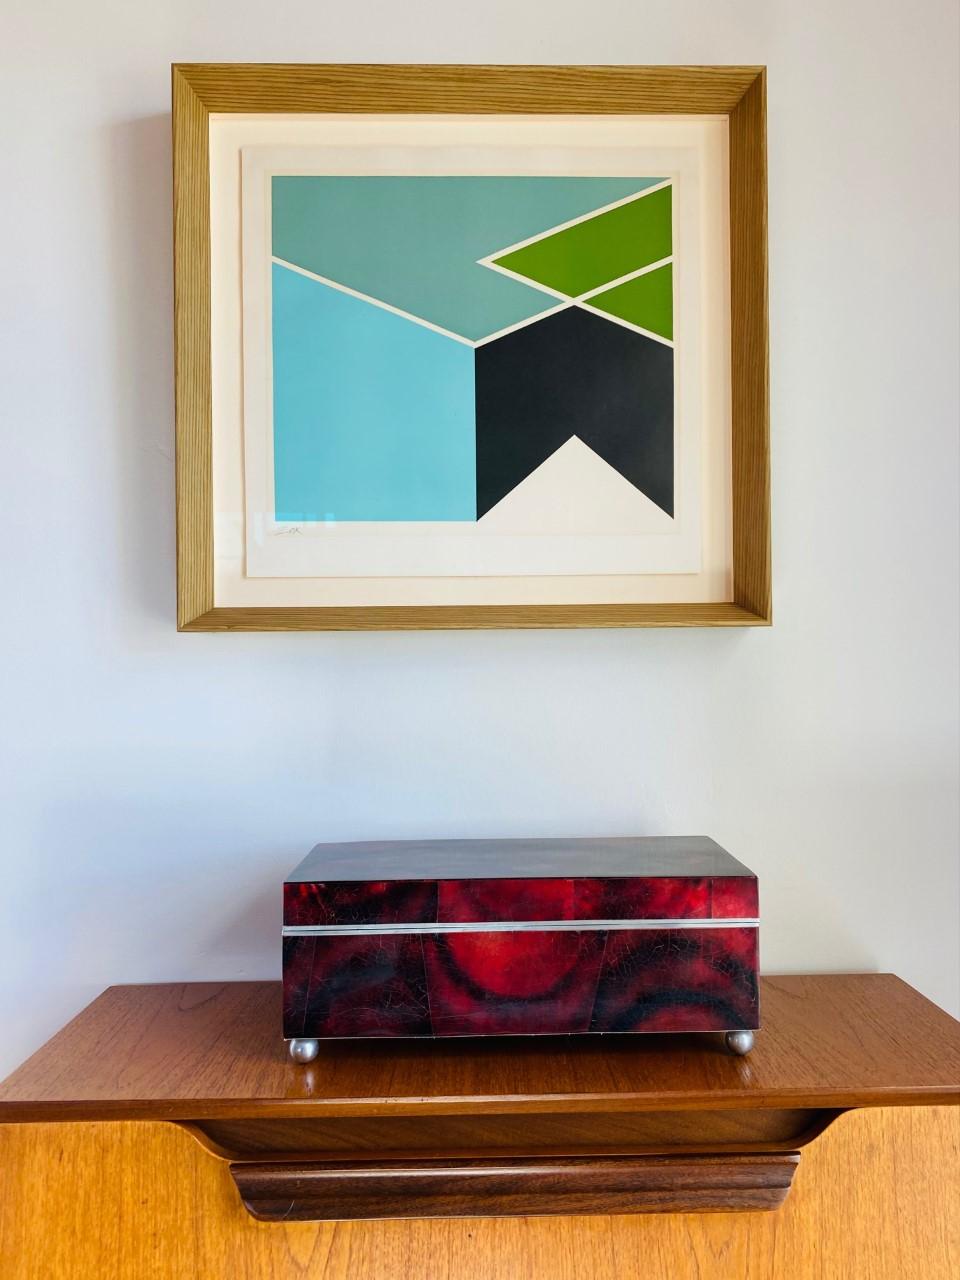 Diese wunderschöne Box von Maitland Smith strahlt Stil und Glamour aus. Dieses Design aus den späten 1980er Jahren ist glamourös und funktionell. Die postmodernen Linien in einer fast zylindrischen Sockelstruktur sind mit einer wunderschönen, rot